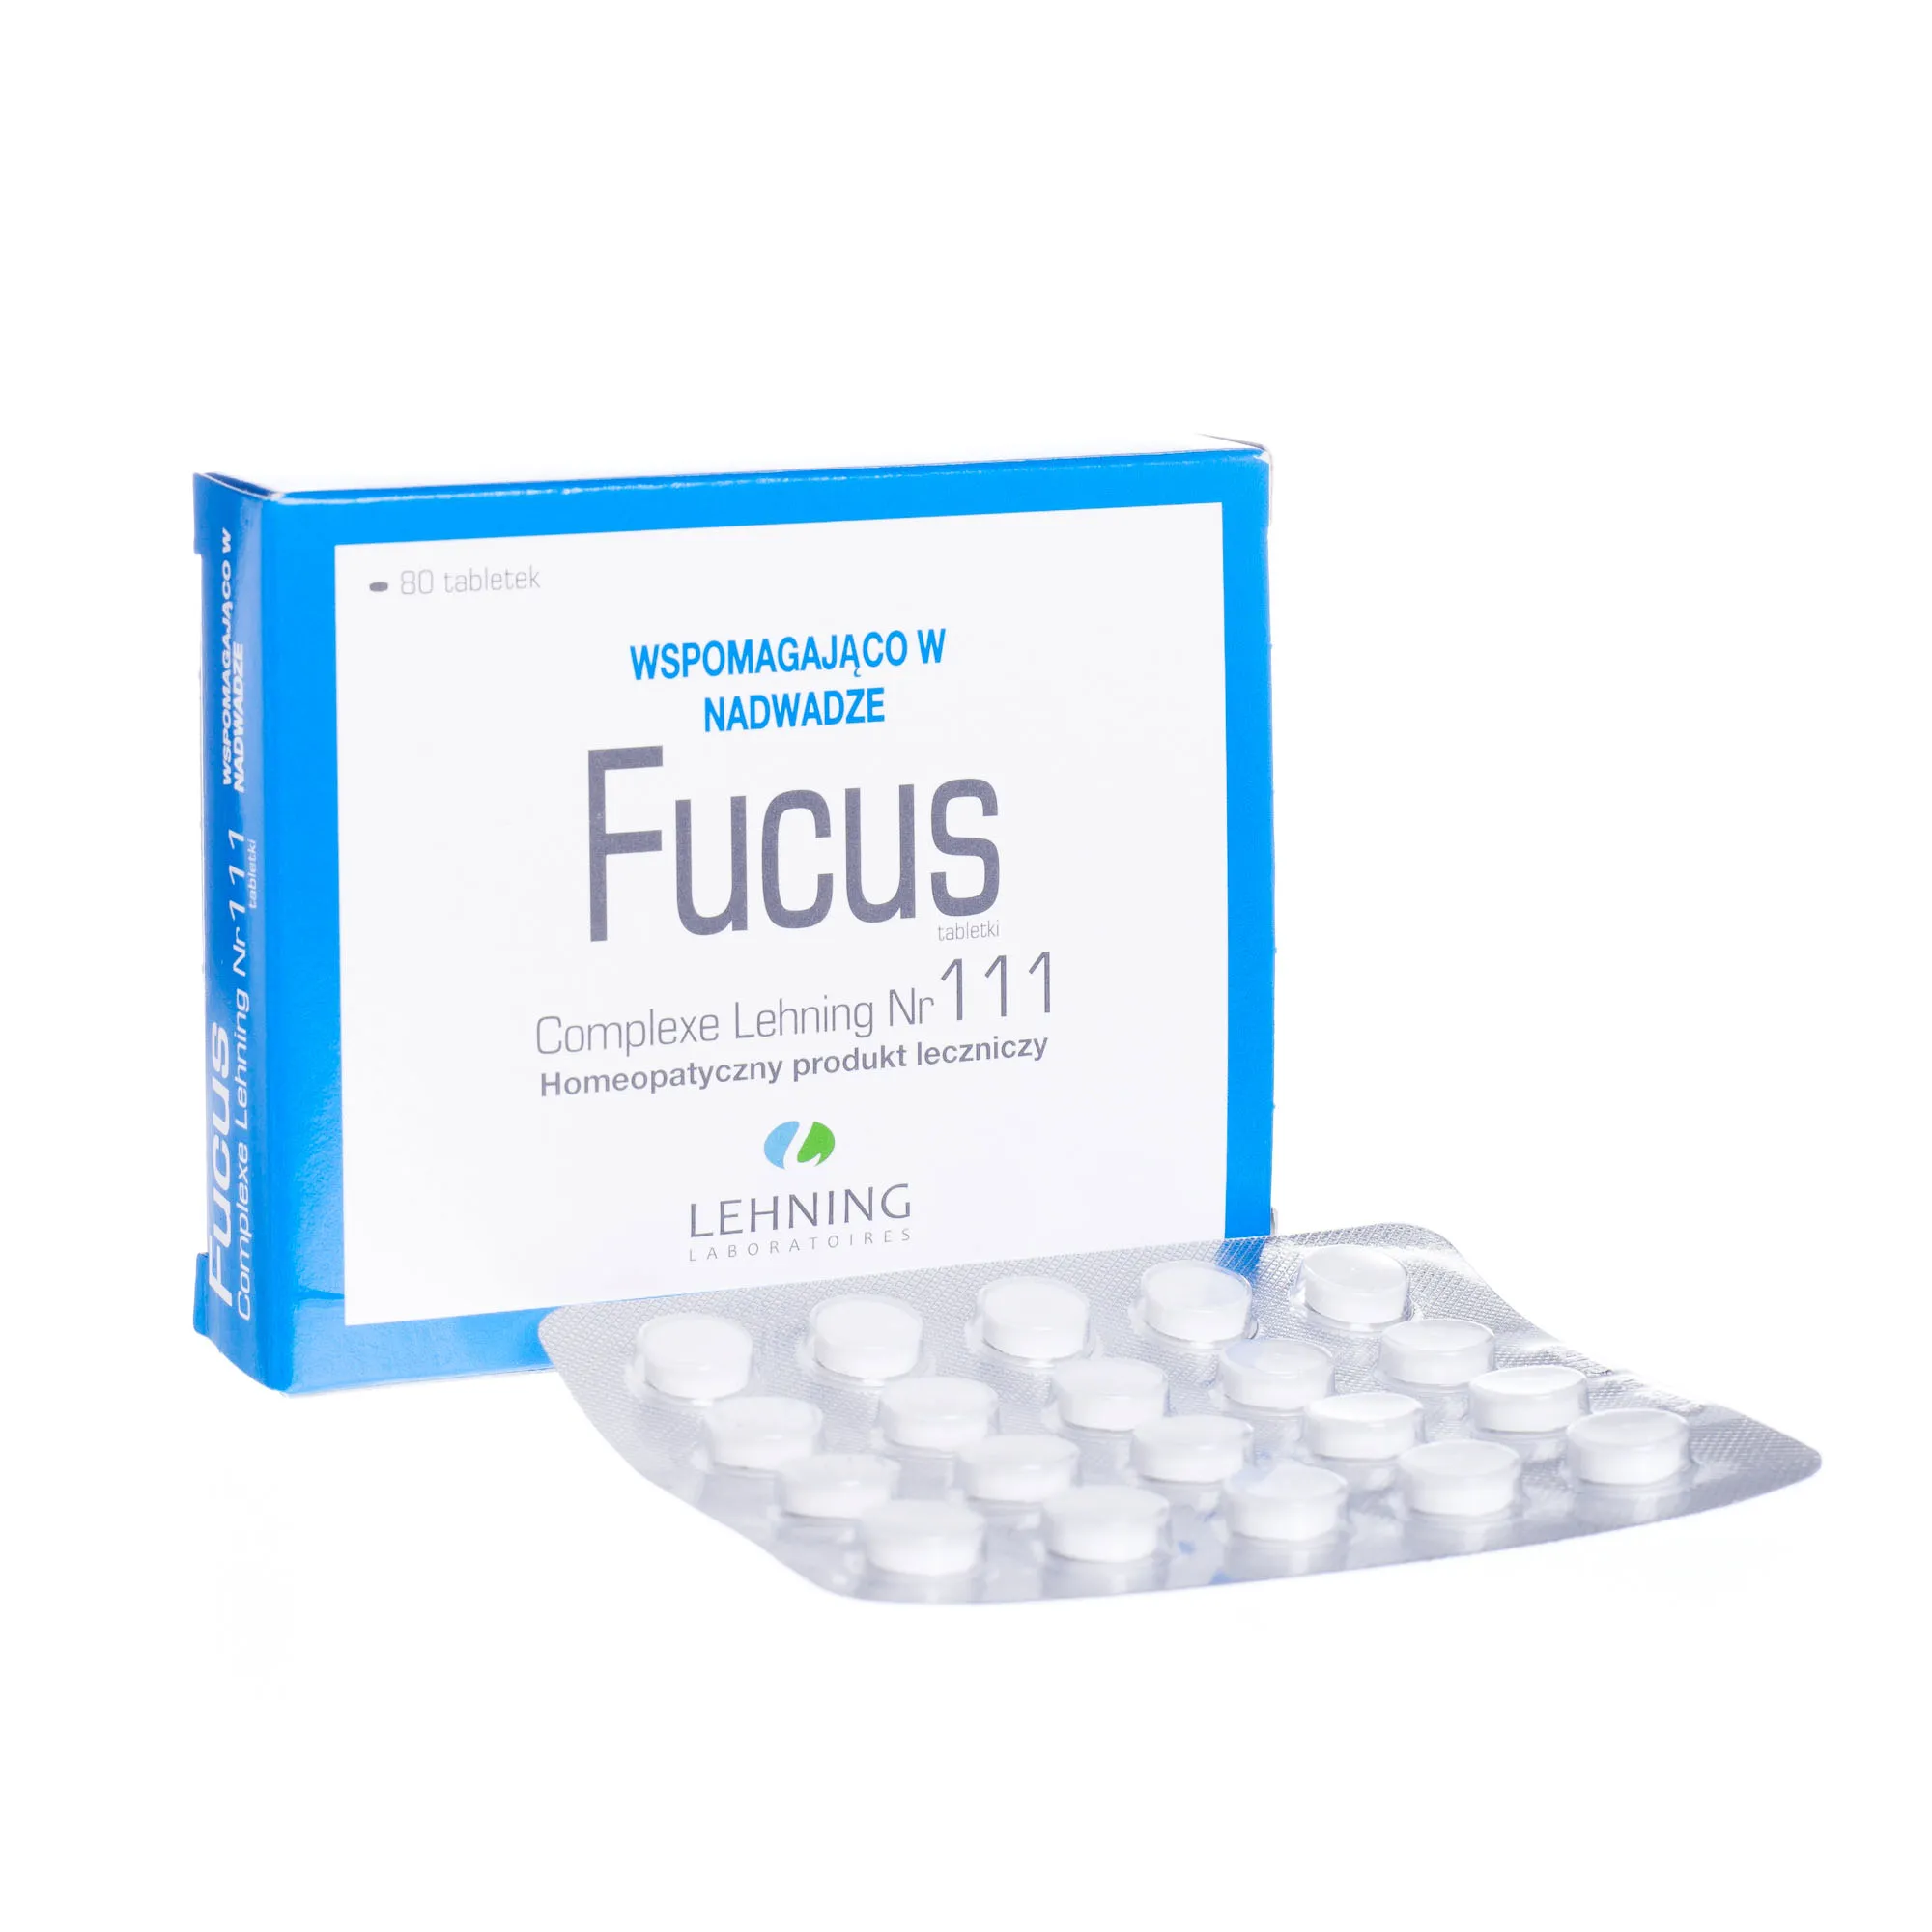 Lehning Fucus complexe Nr 111, 80 tabletek 